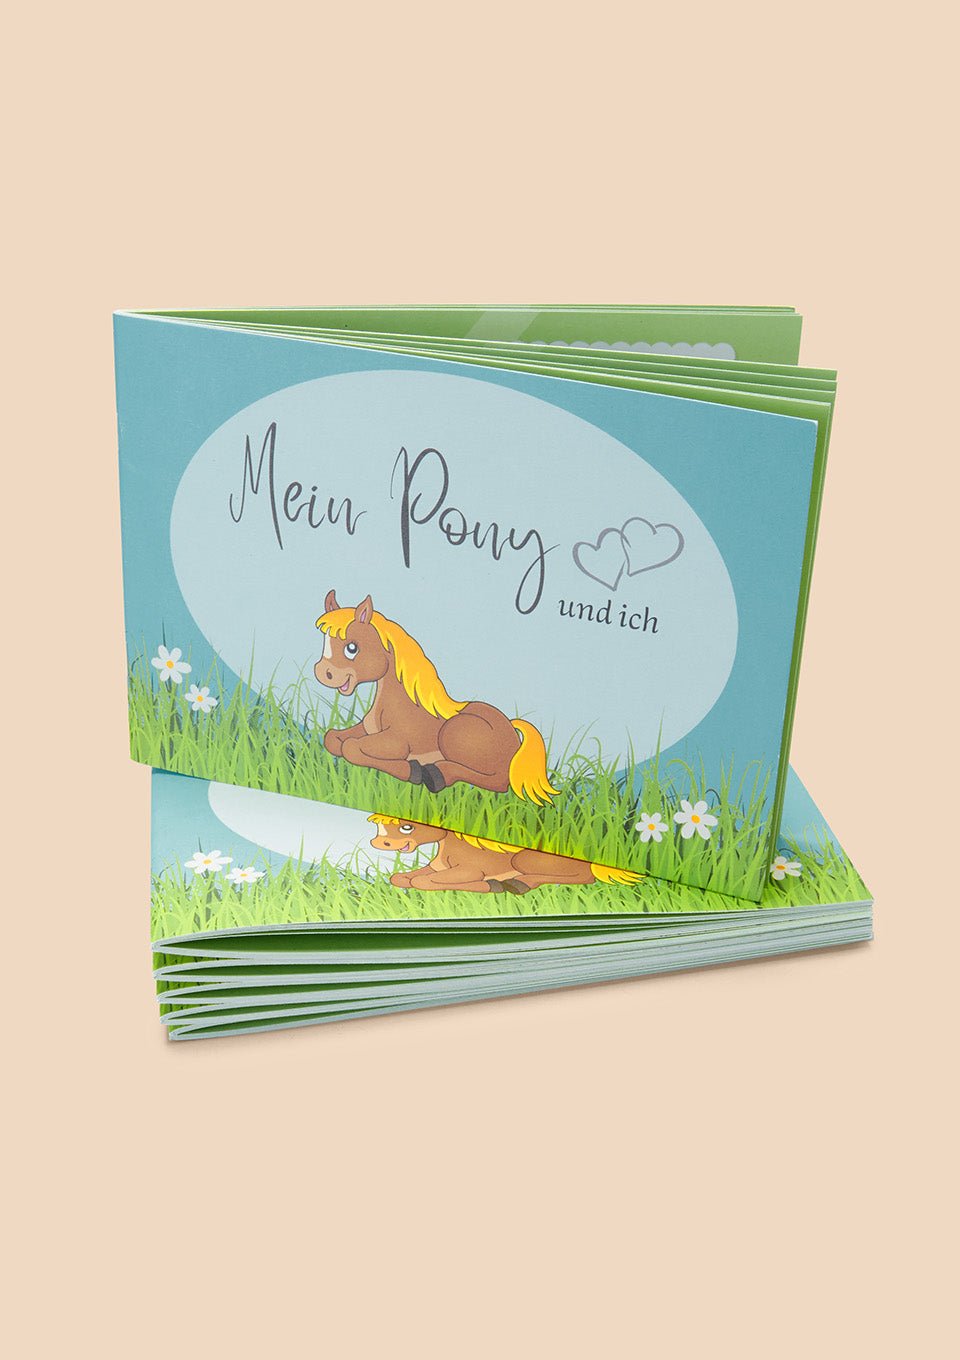 Nickmory Erinnerungsbuch "Mein Pony und ich" - tiny-boon.com